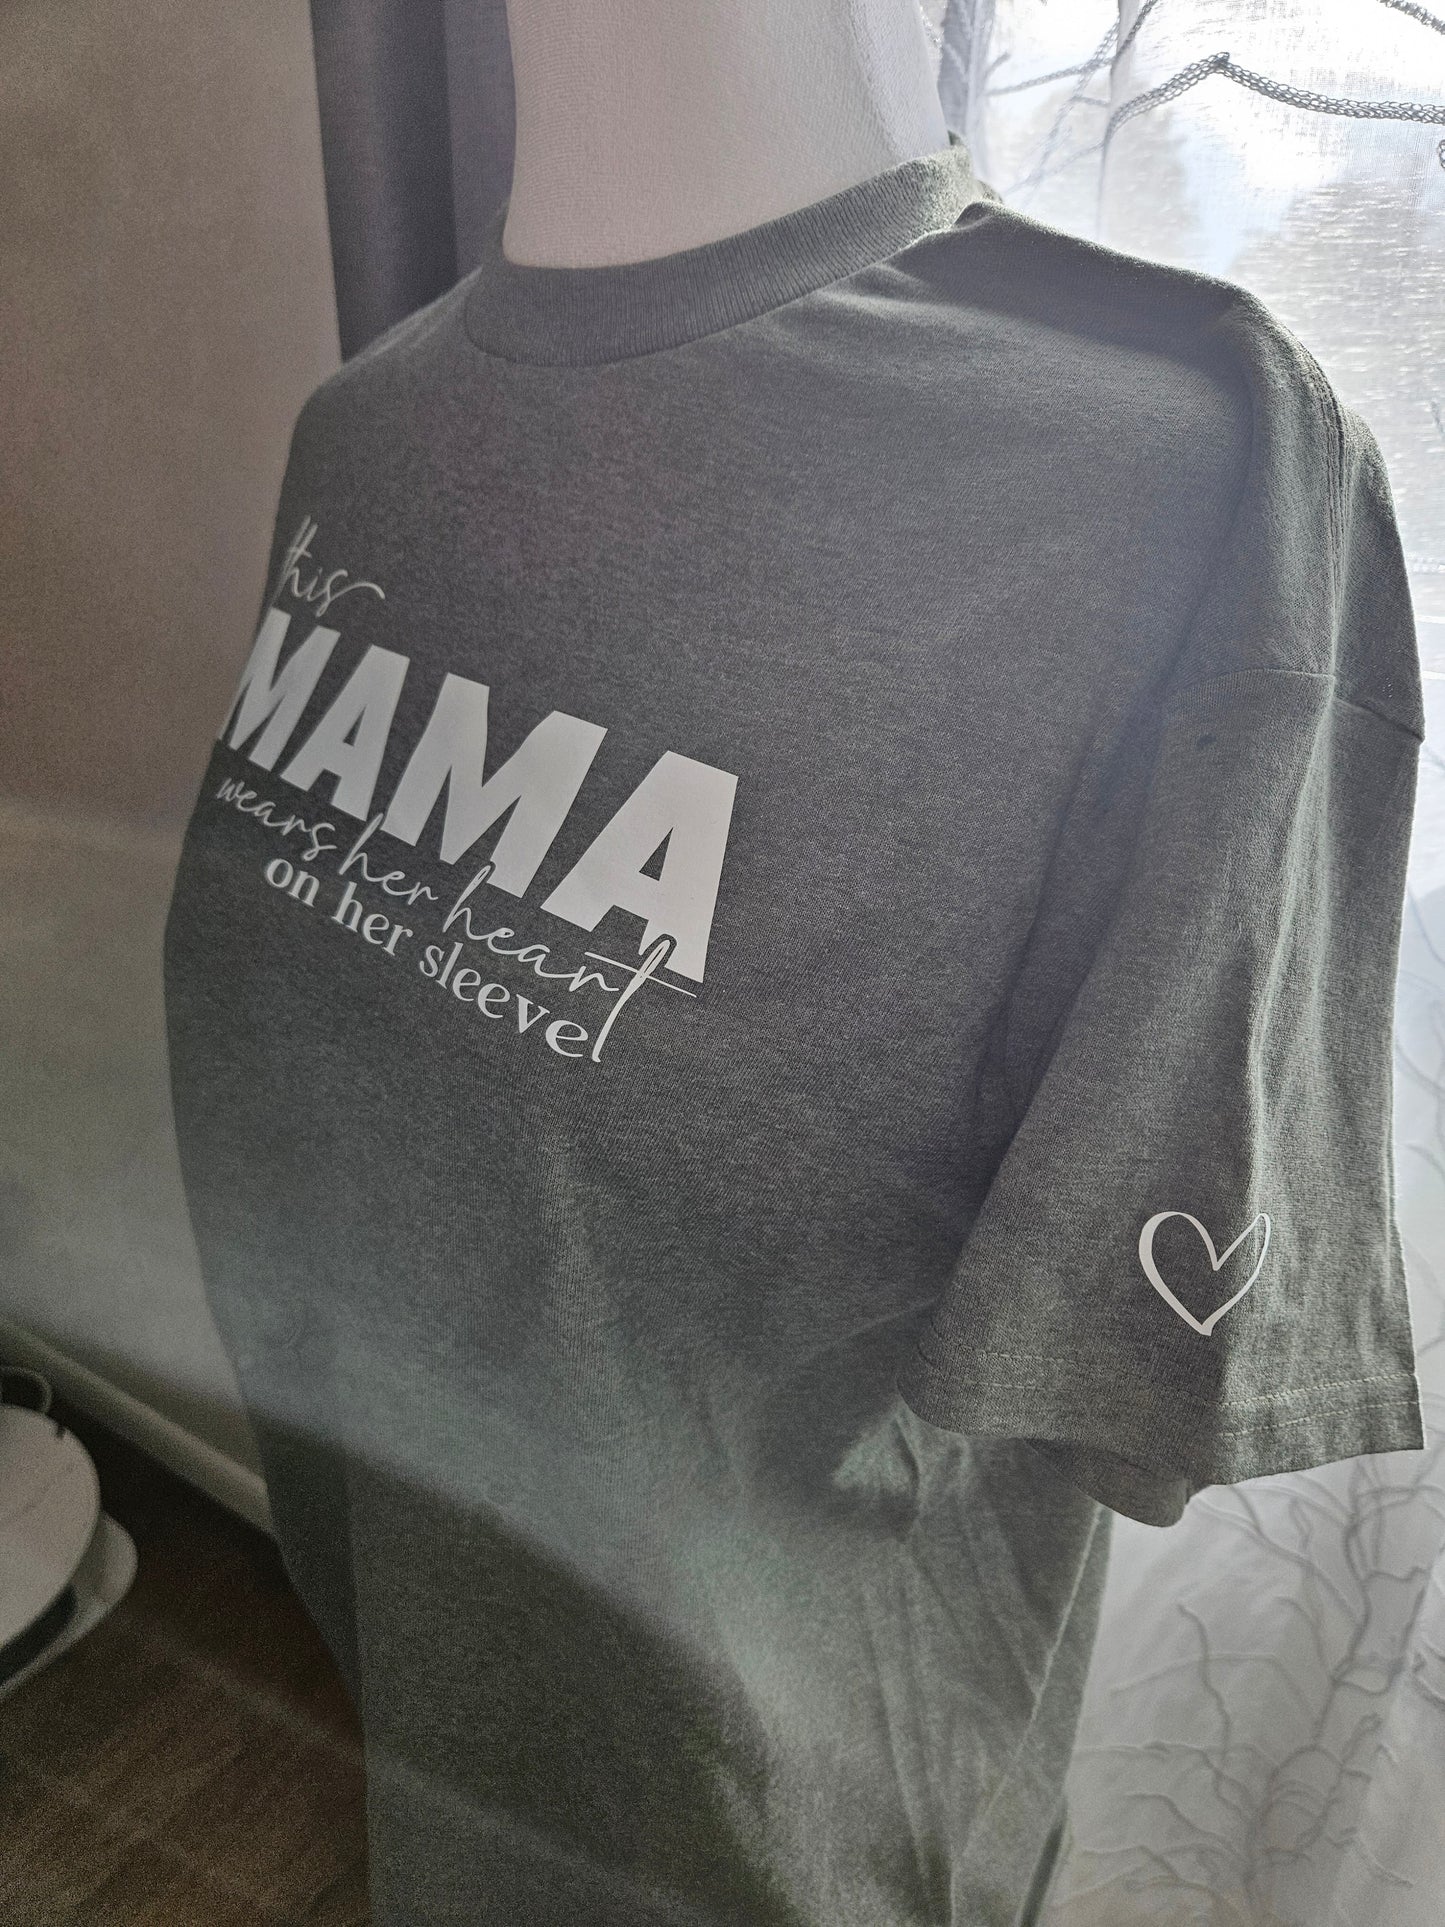 This mama 💜 t- shirt